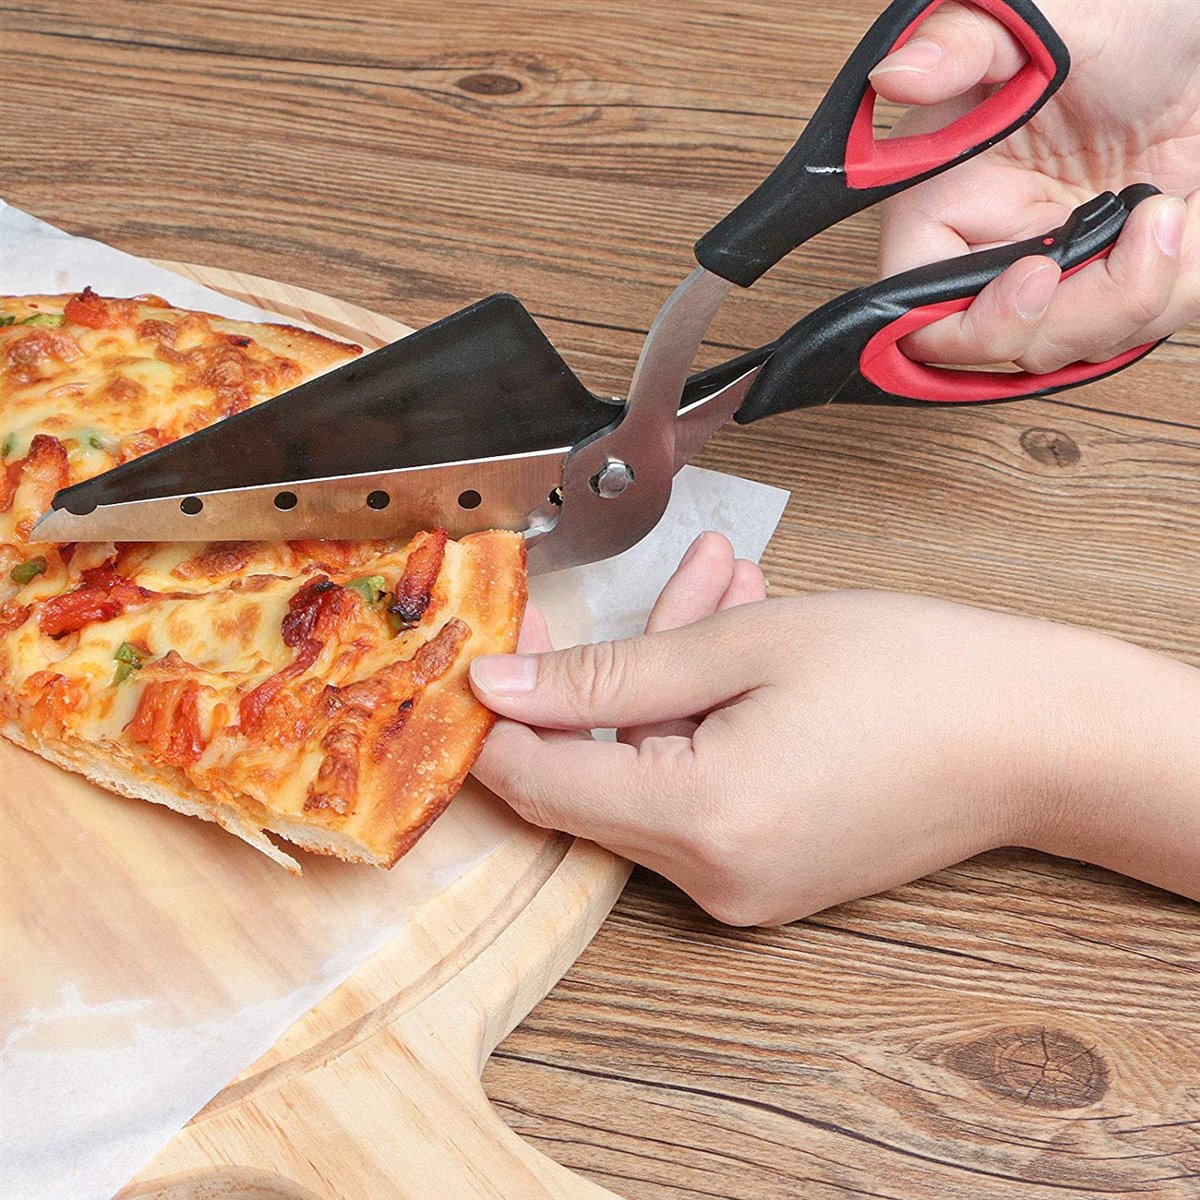 corta pizza con espatula amazon